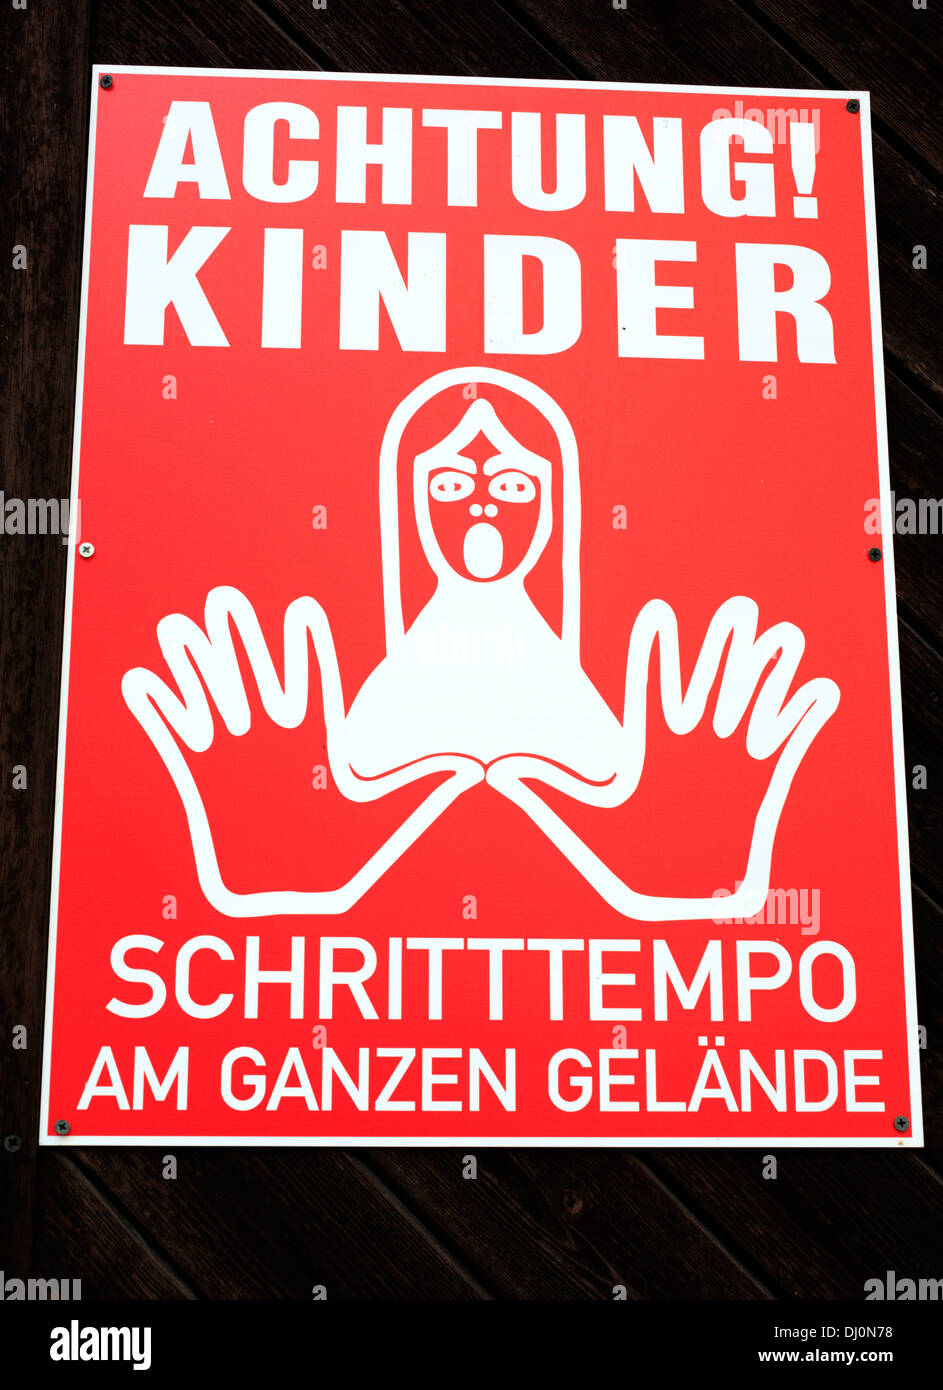 Attention children sign, Vienna, Austria Stock Photo